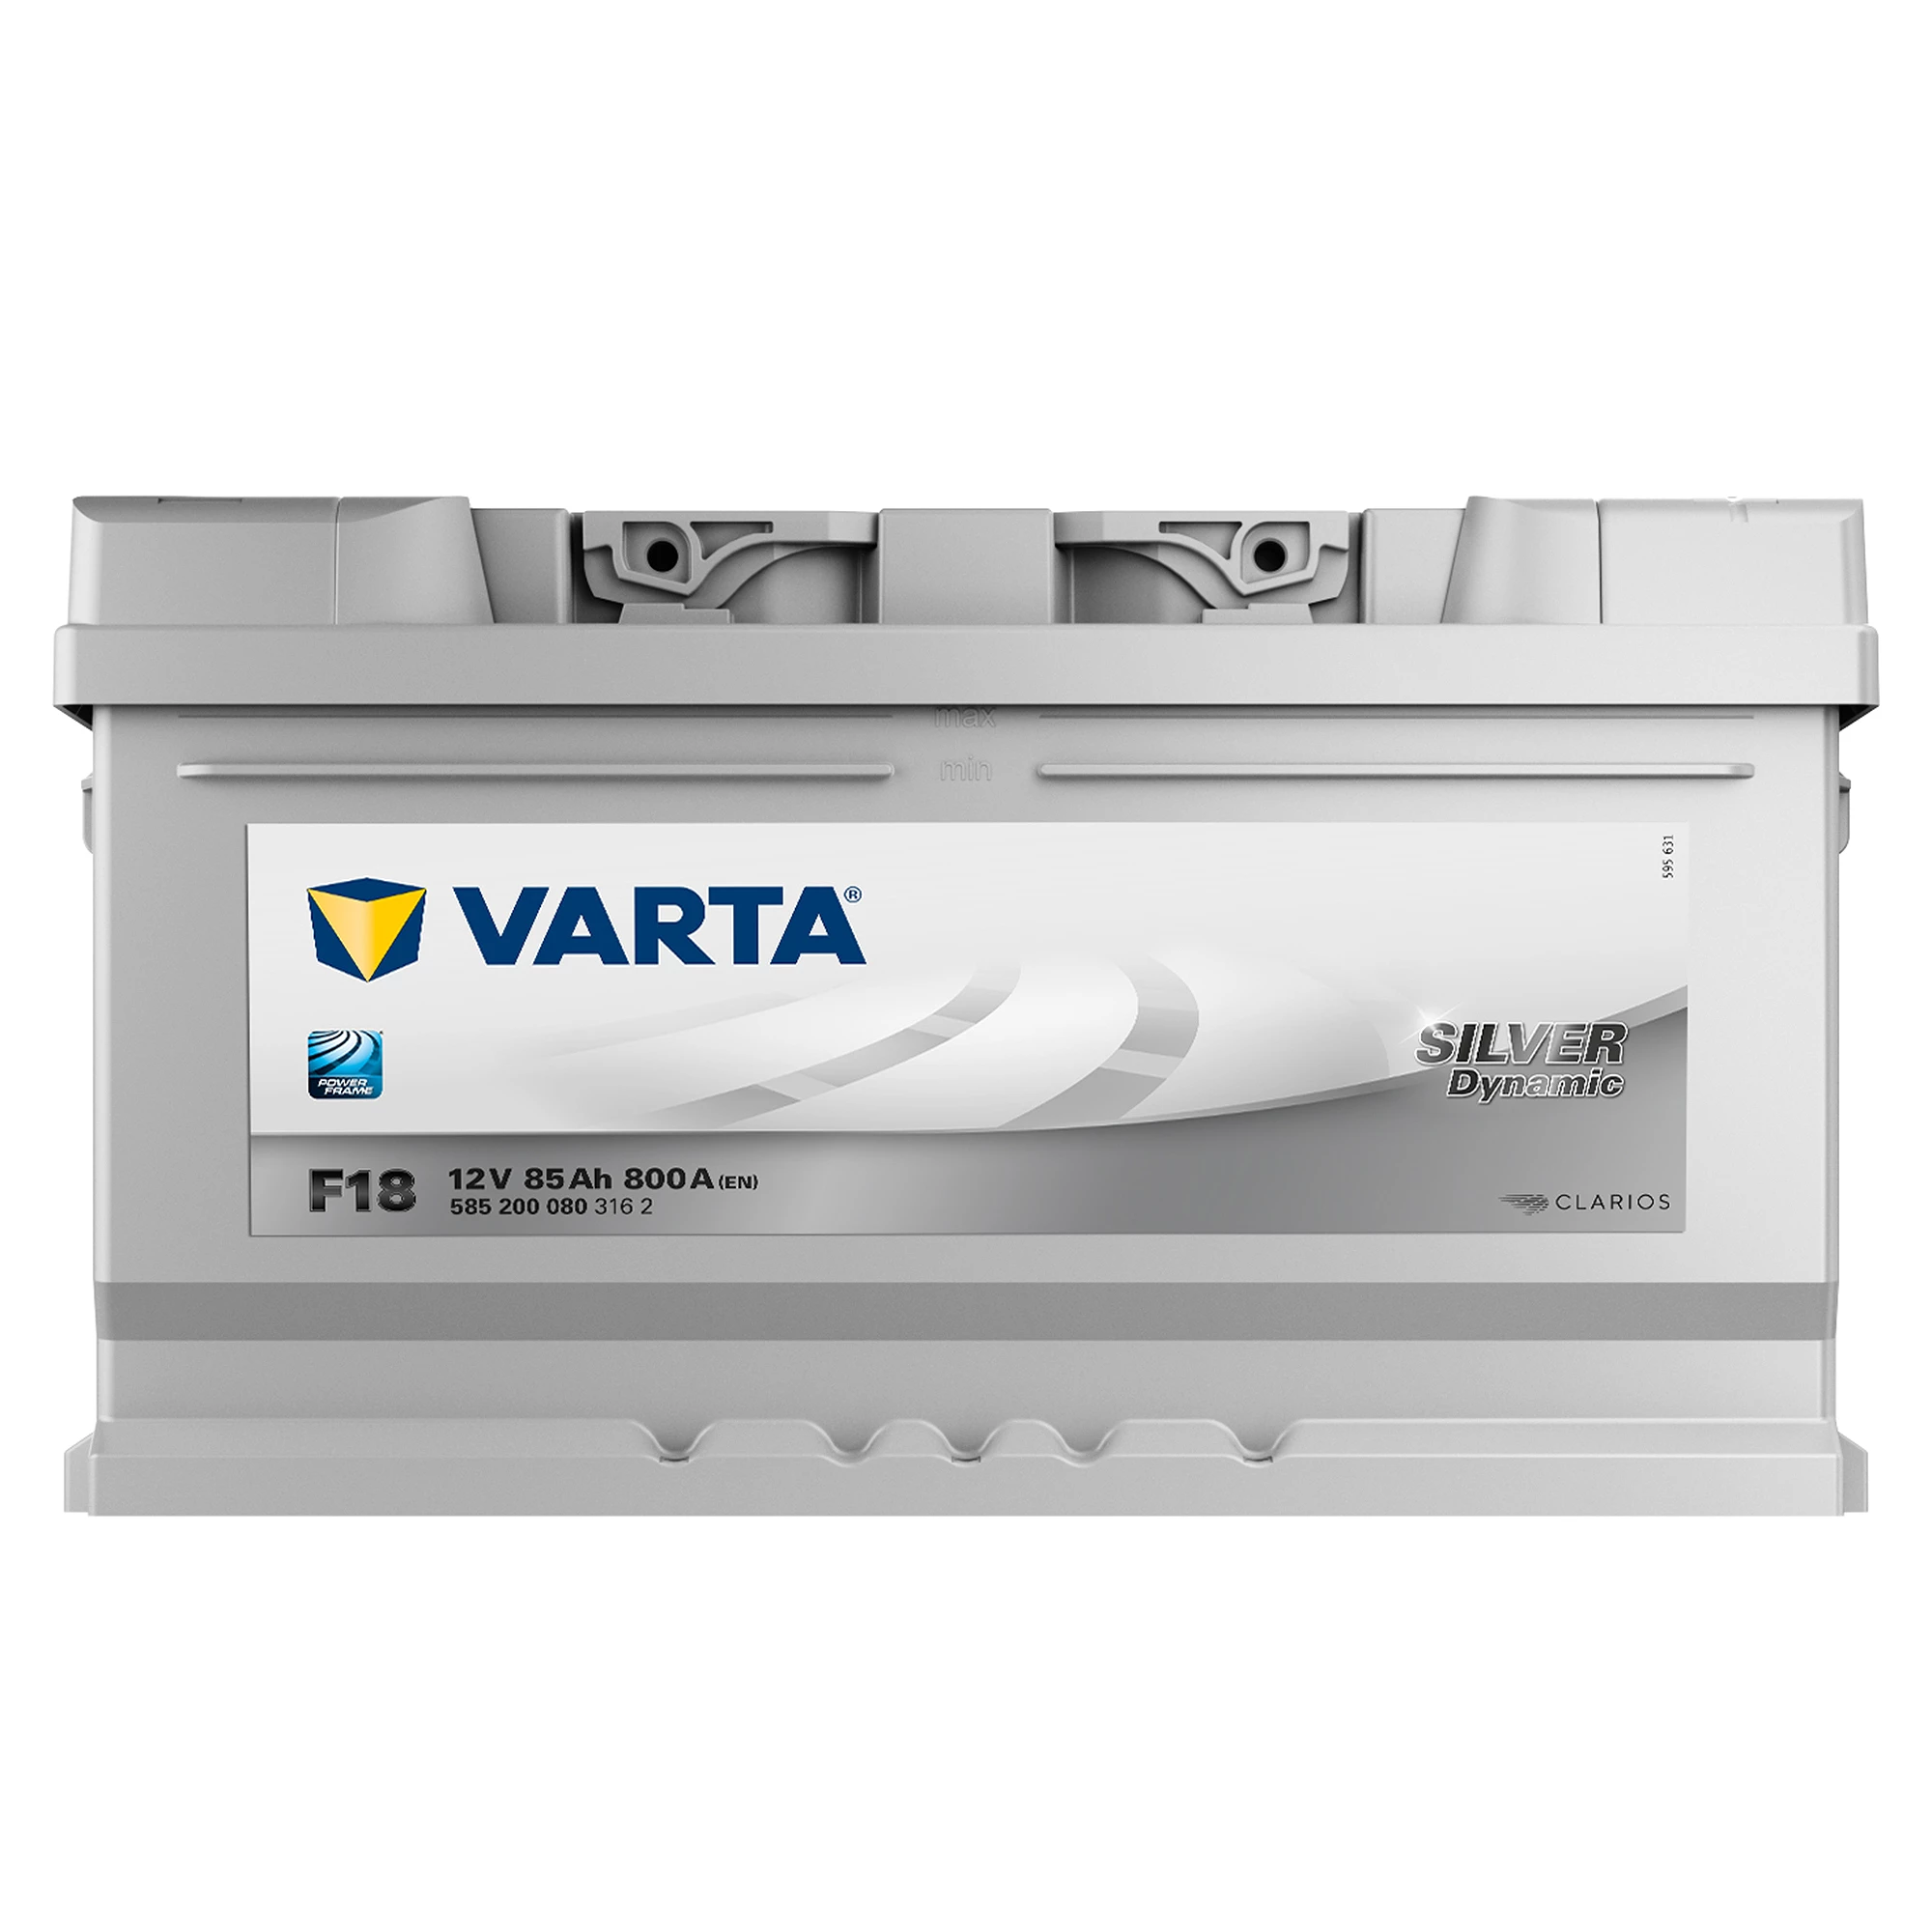 VARTA® Silver Dynamic AGM - Premium-Power für hohe Leistung und